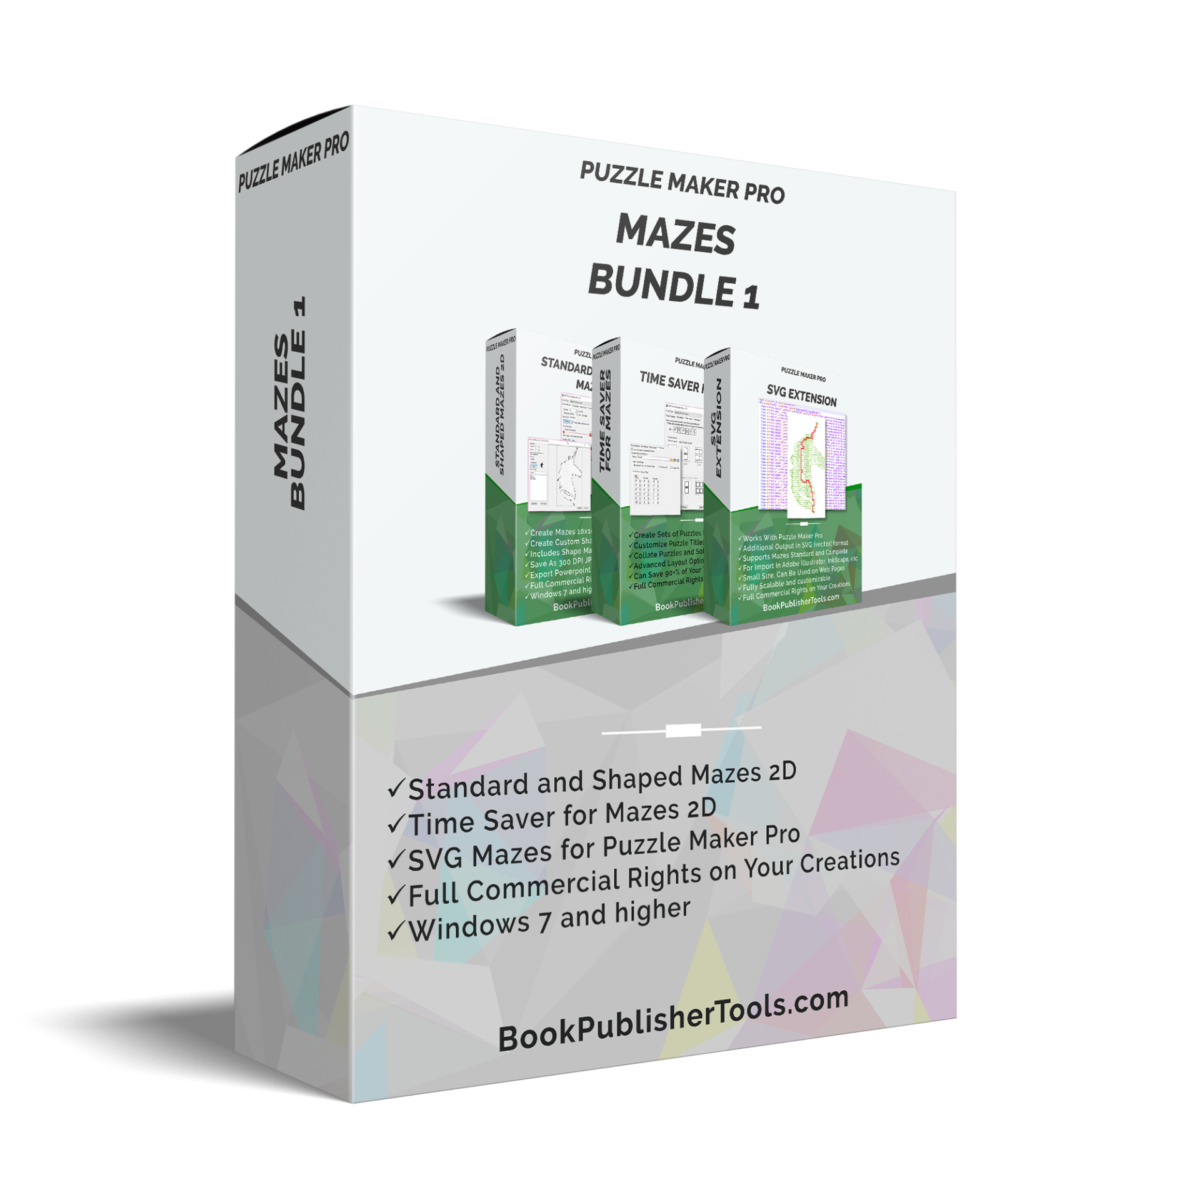 Puzzle Maker Pro Mazes Bundle software box